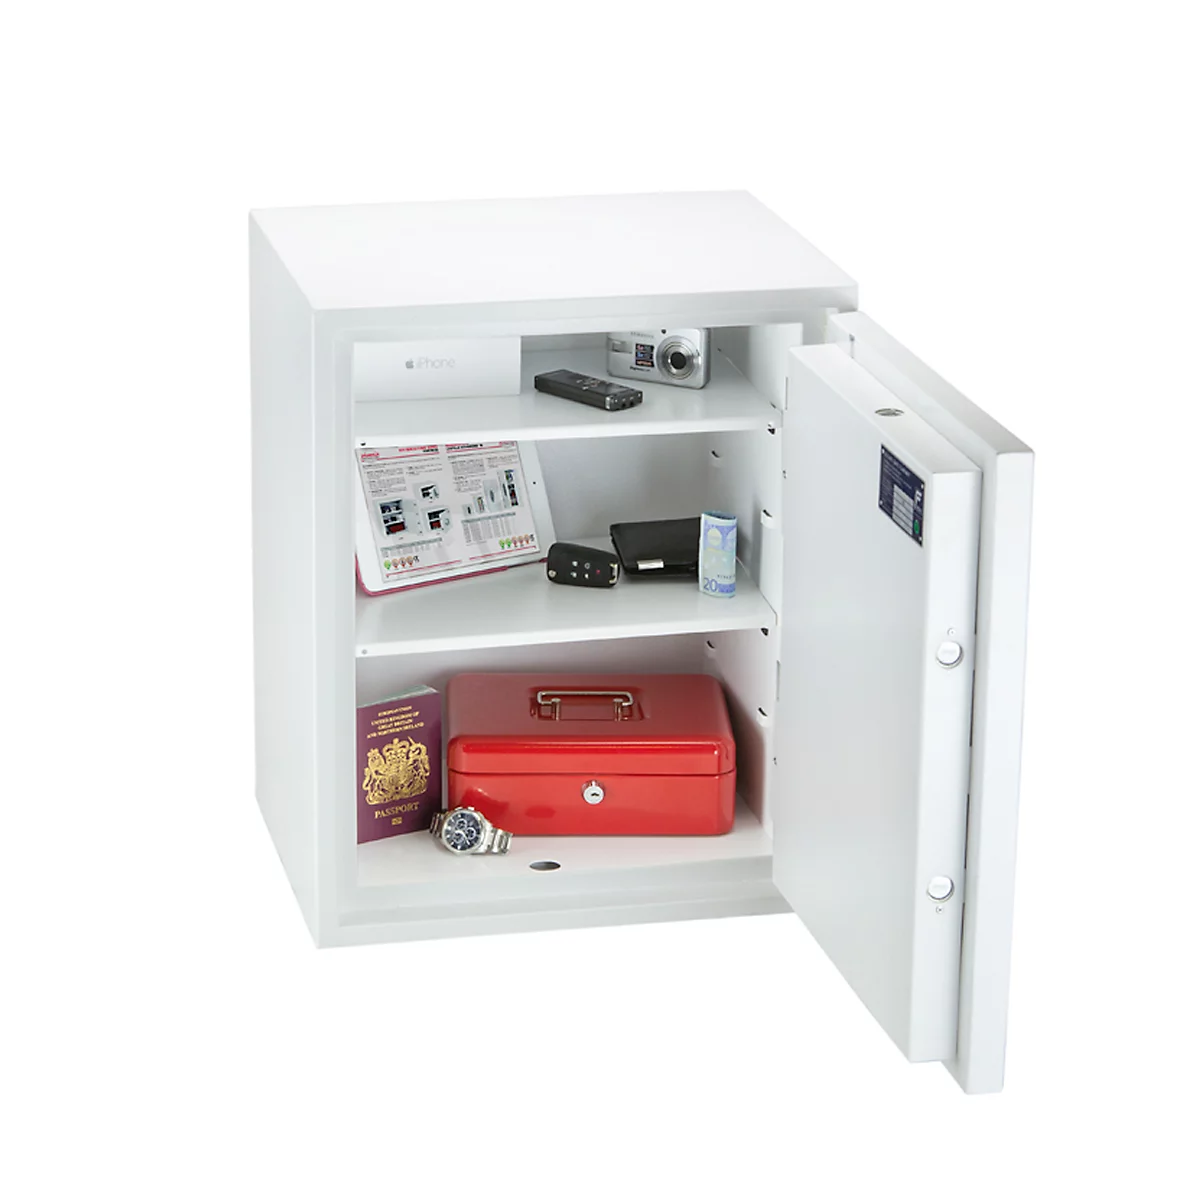 Caja de seguridad Fortress, serie SS1183, Al 550 x An 450 x P 350 mm, cerradura electr.